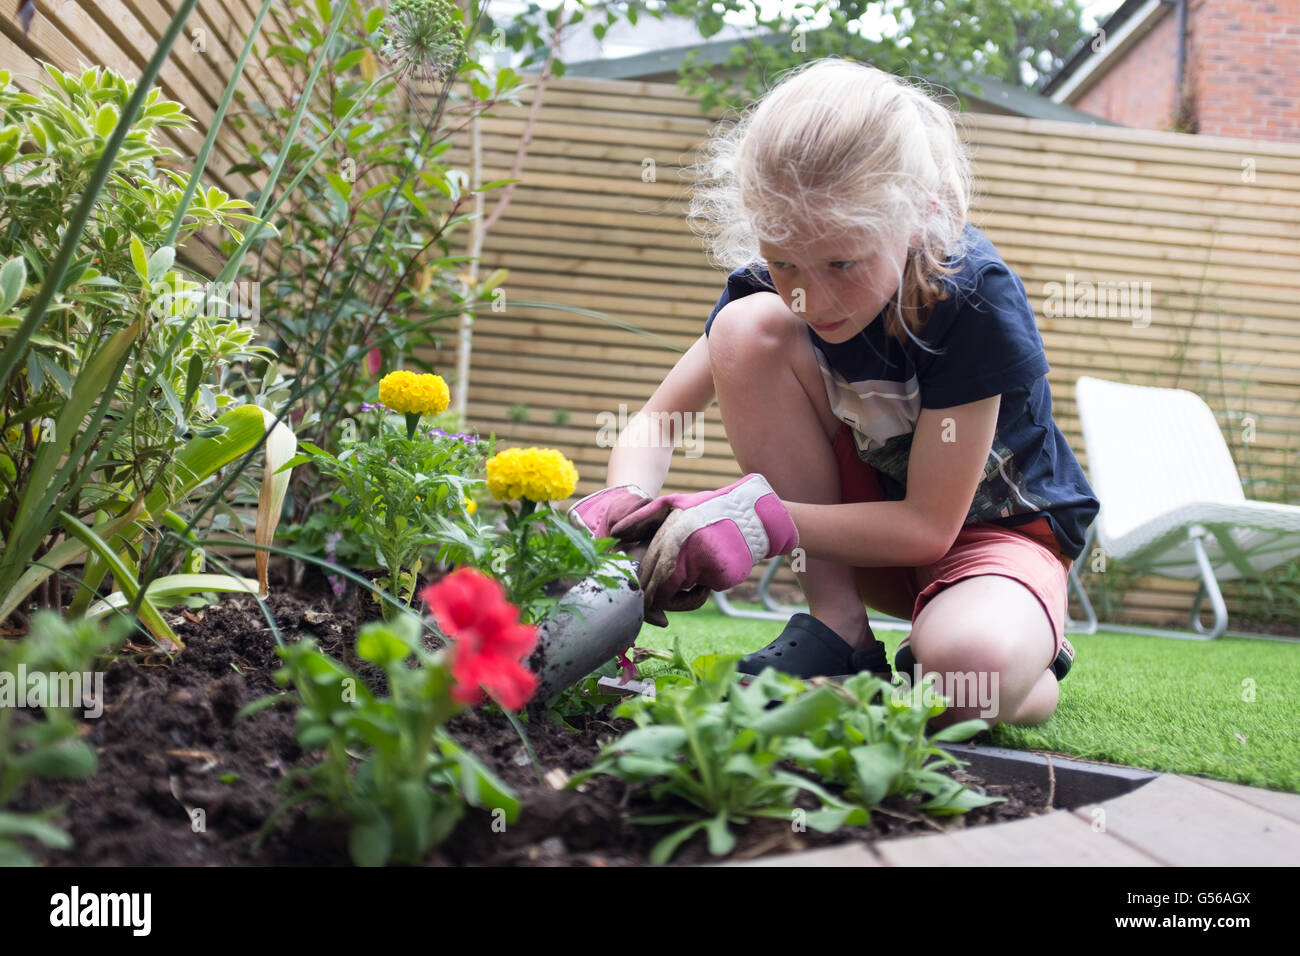 Ein junges Mädchen in einem zeitgenössischen UK Garten Gartenarbeit Stockfoto